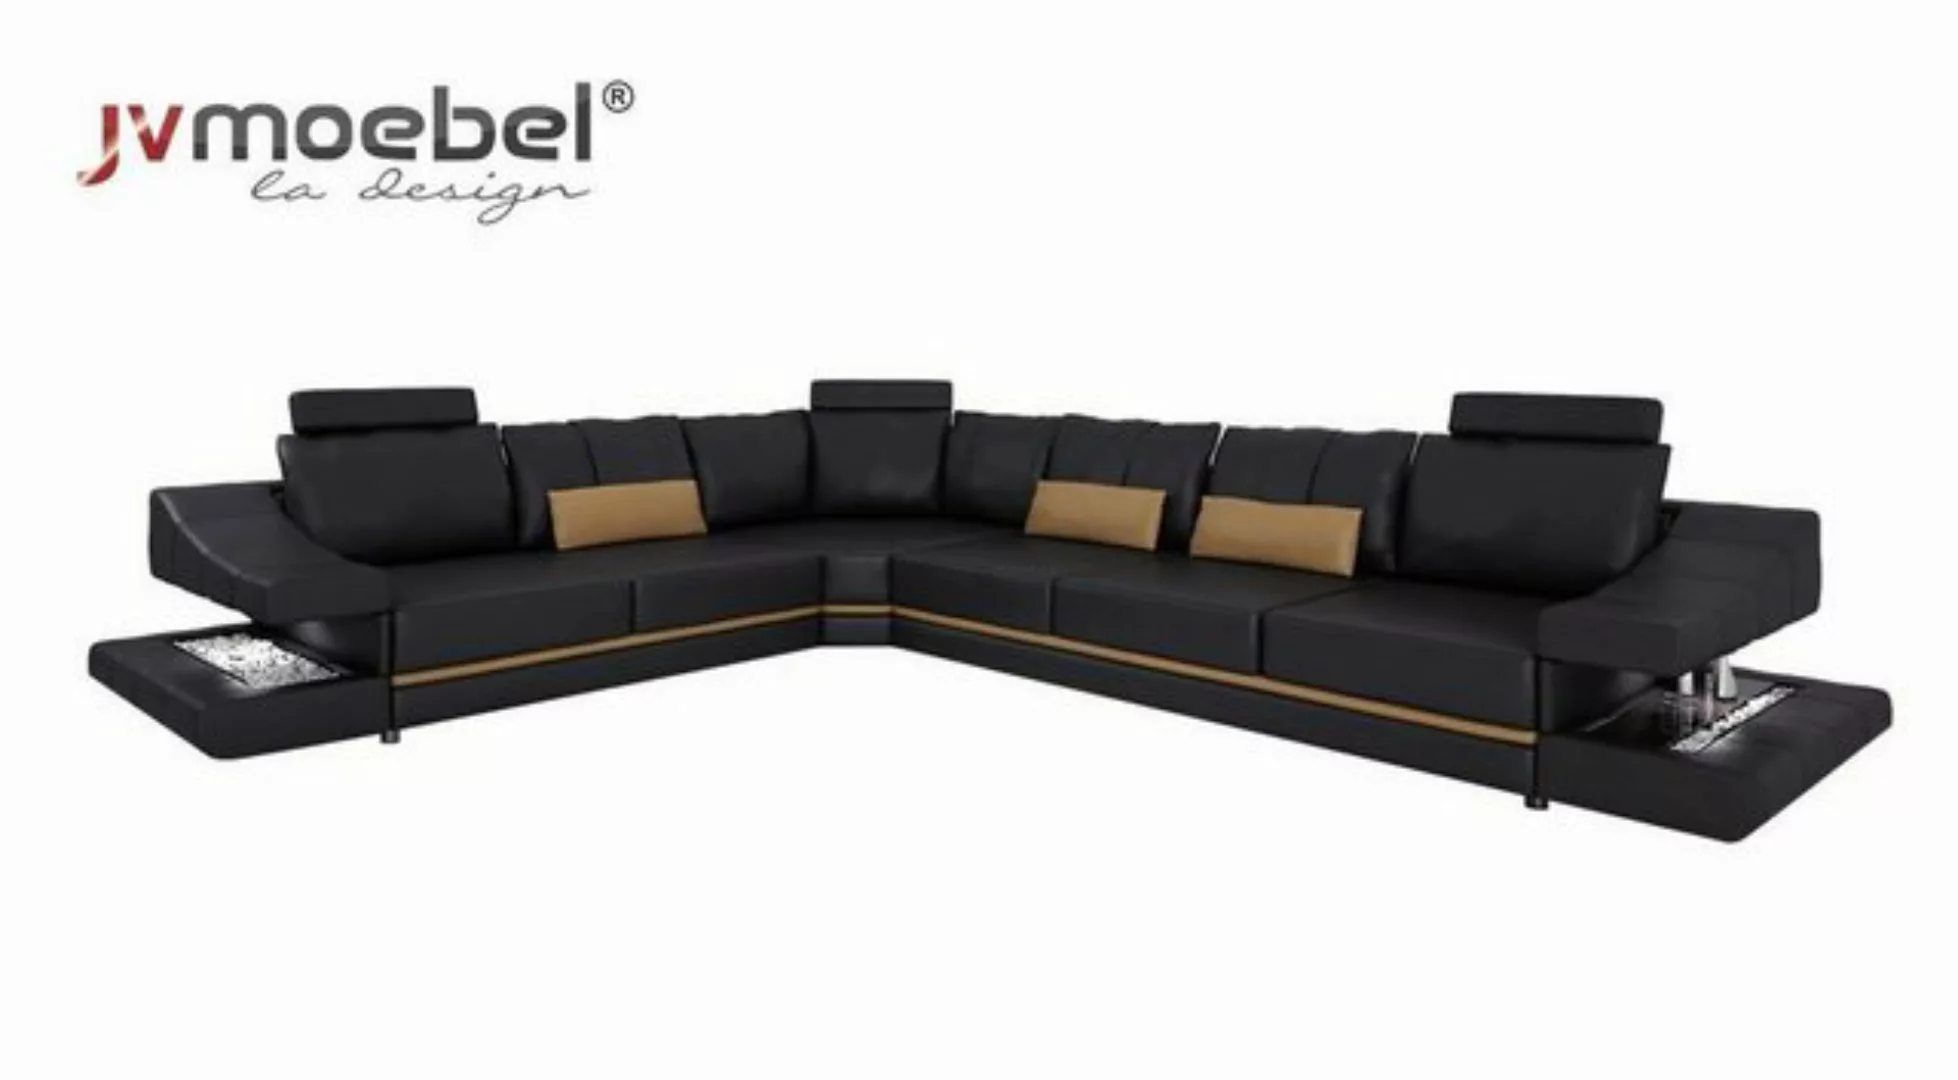 JVmoebel Ecksofa, Wohnzimmer Textil L-Form Sofas Schwarz NEU Ecksofa Couch günstig online kaufen